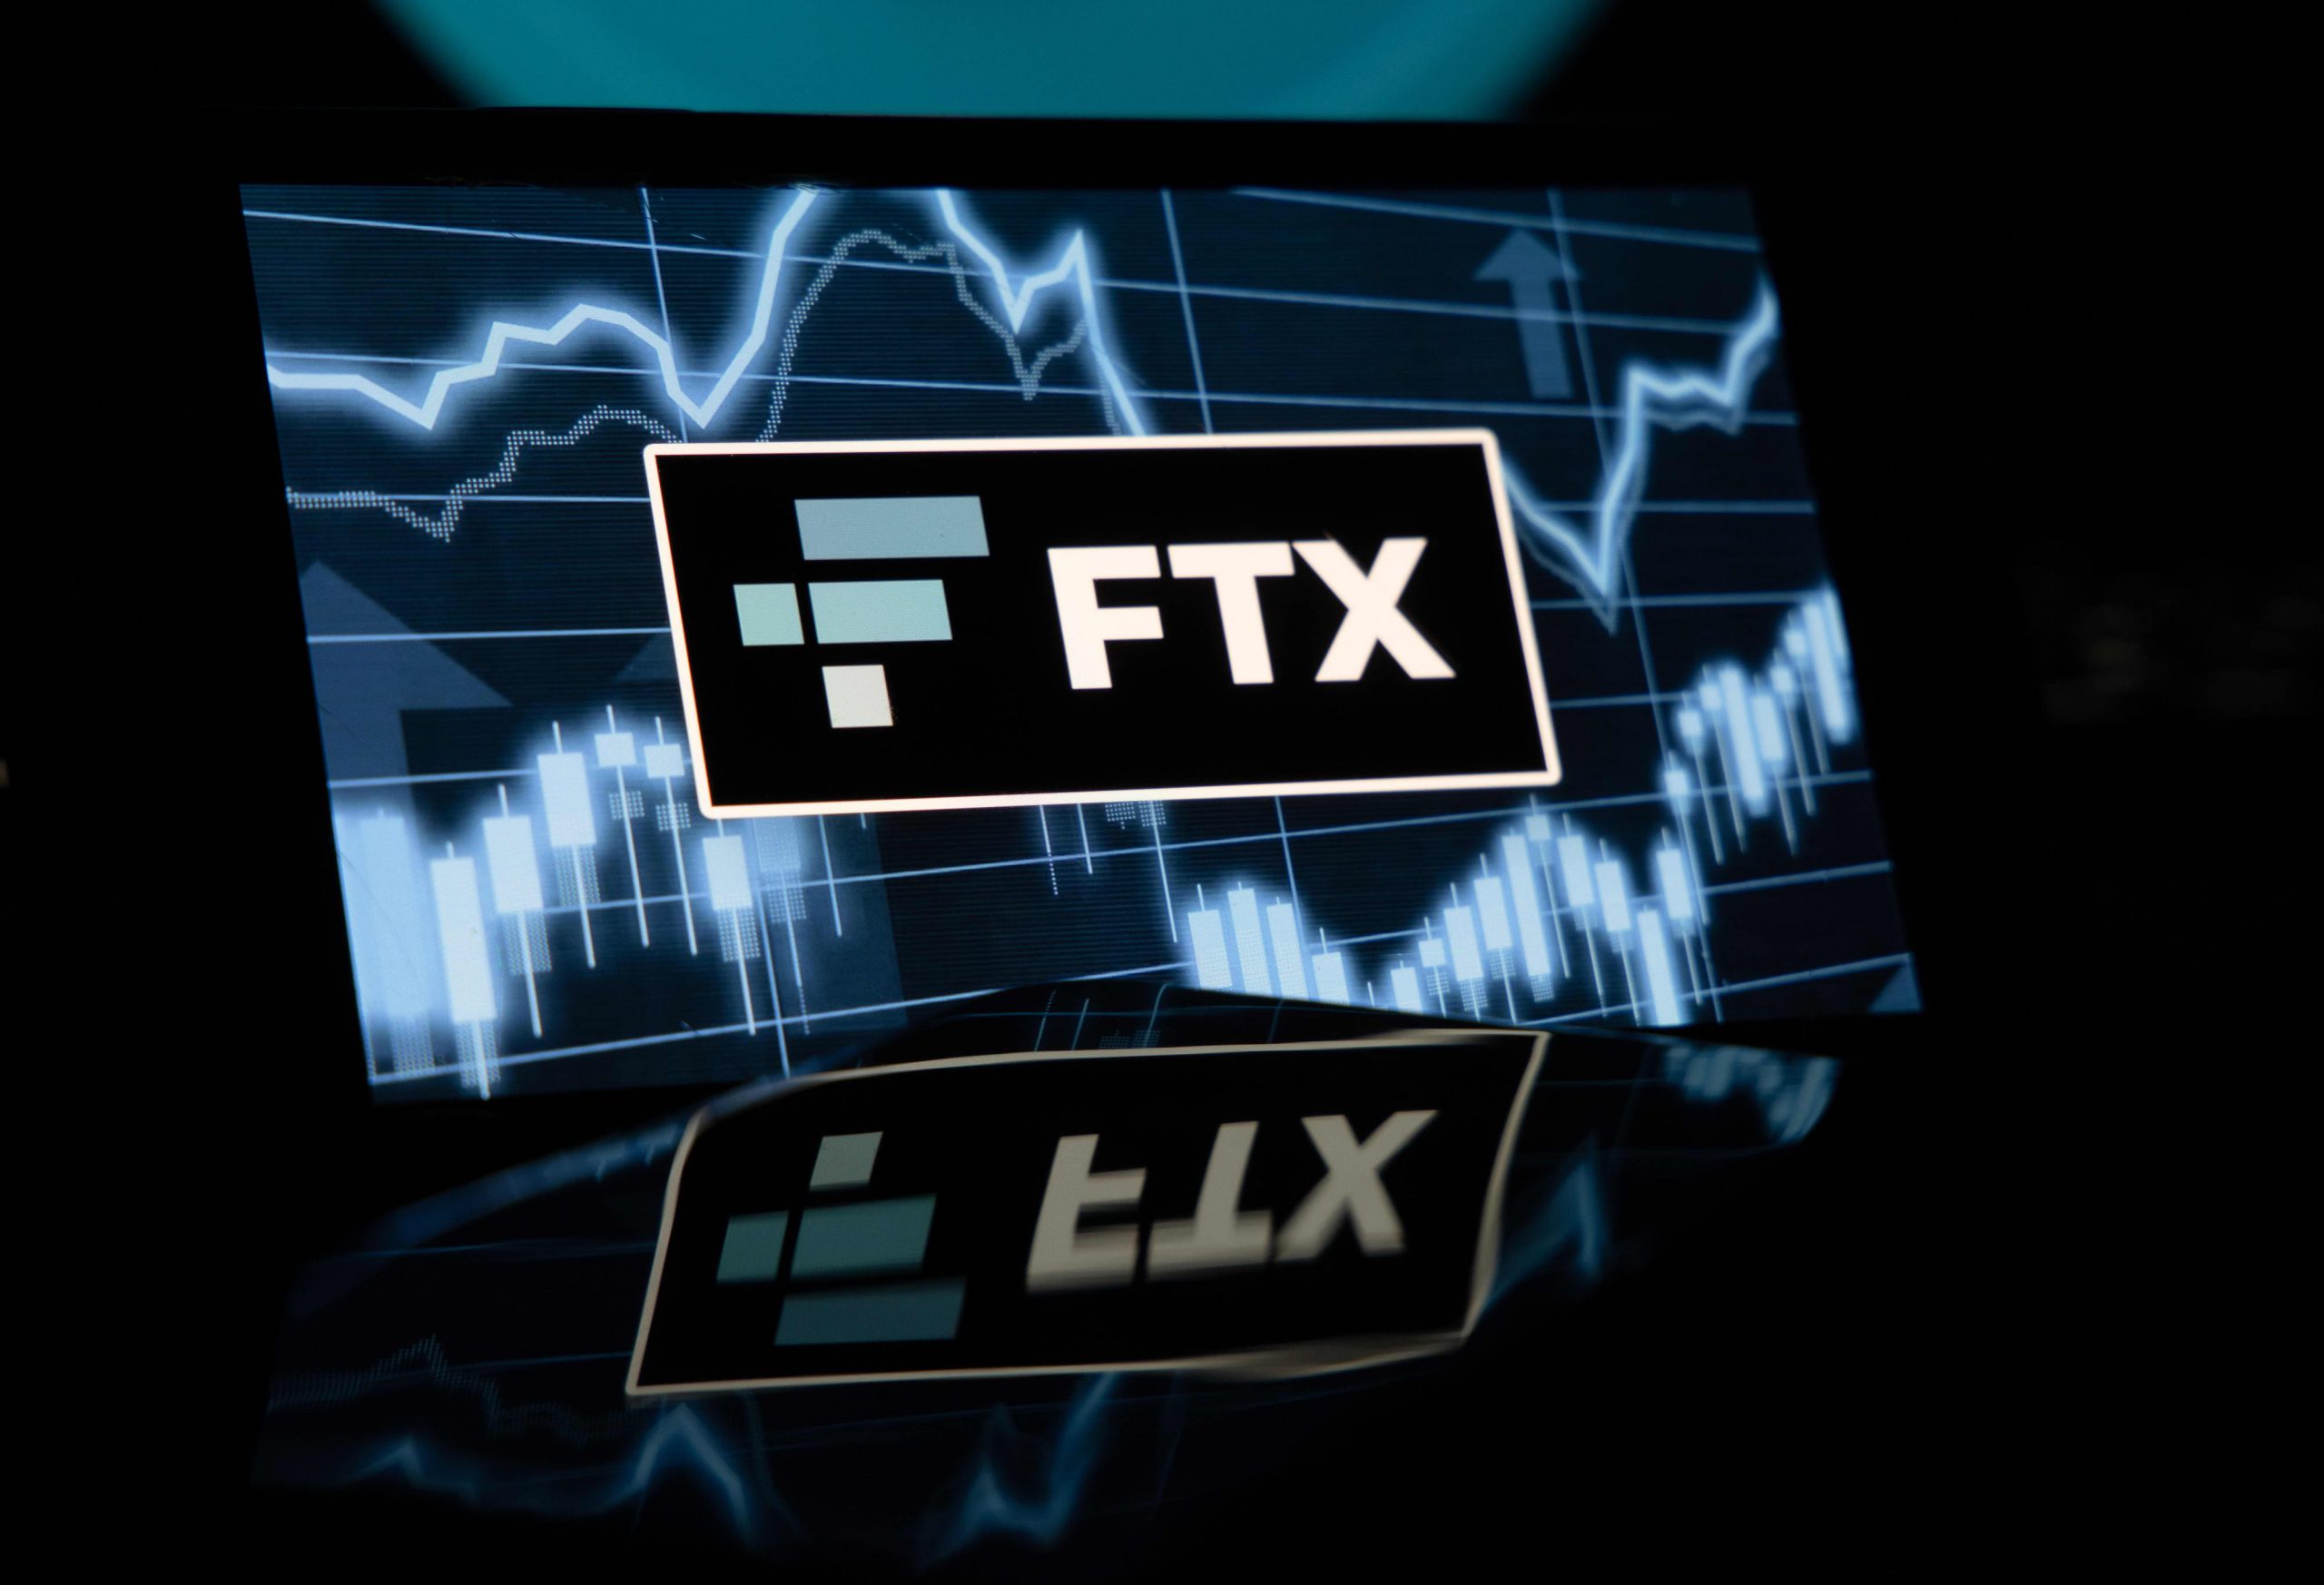 معركة المدينون في اف تي اكس FTX للسيطرة على الأصول وسط خطط إعادة الهيكلة